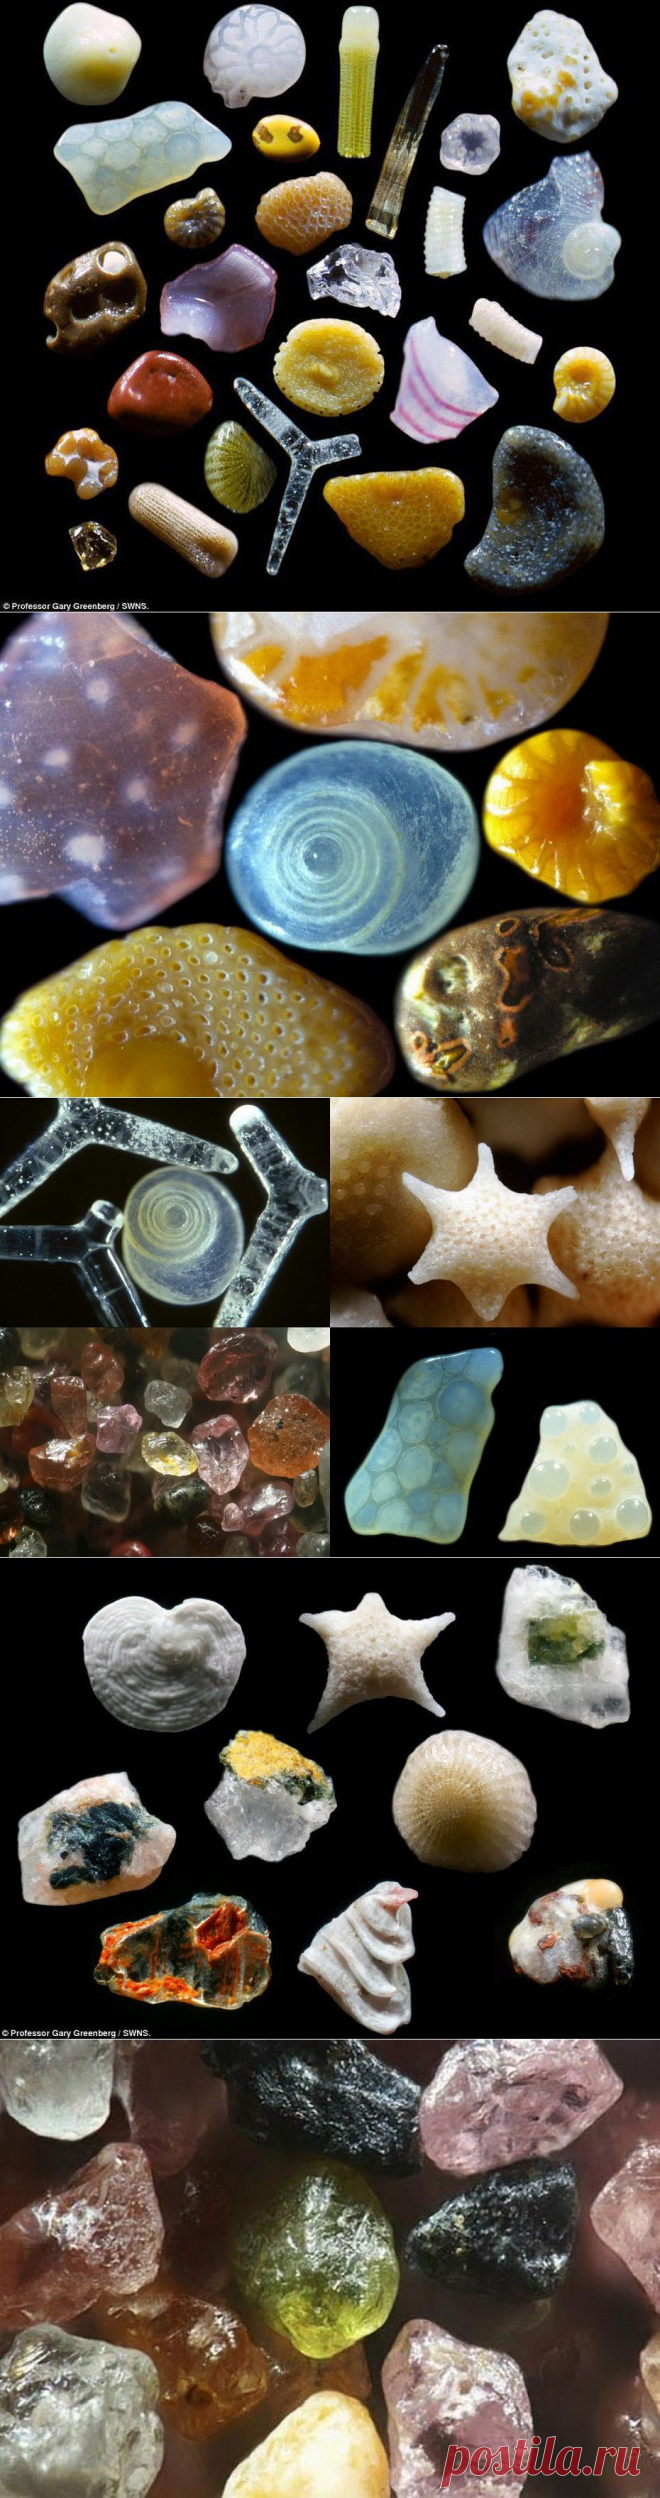 Песок под микроскопом : НОВОСТИ В ФОТОГРАФИЯХ